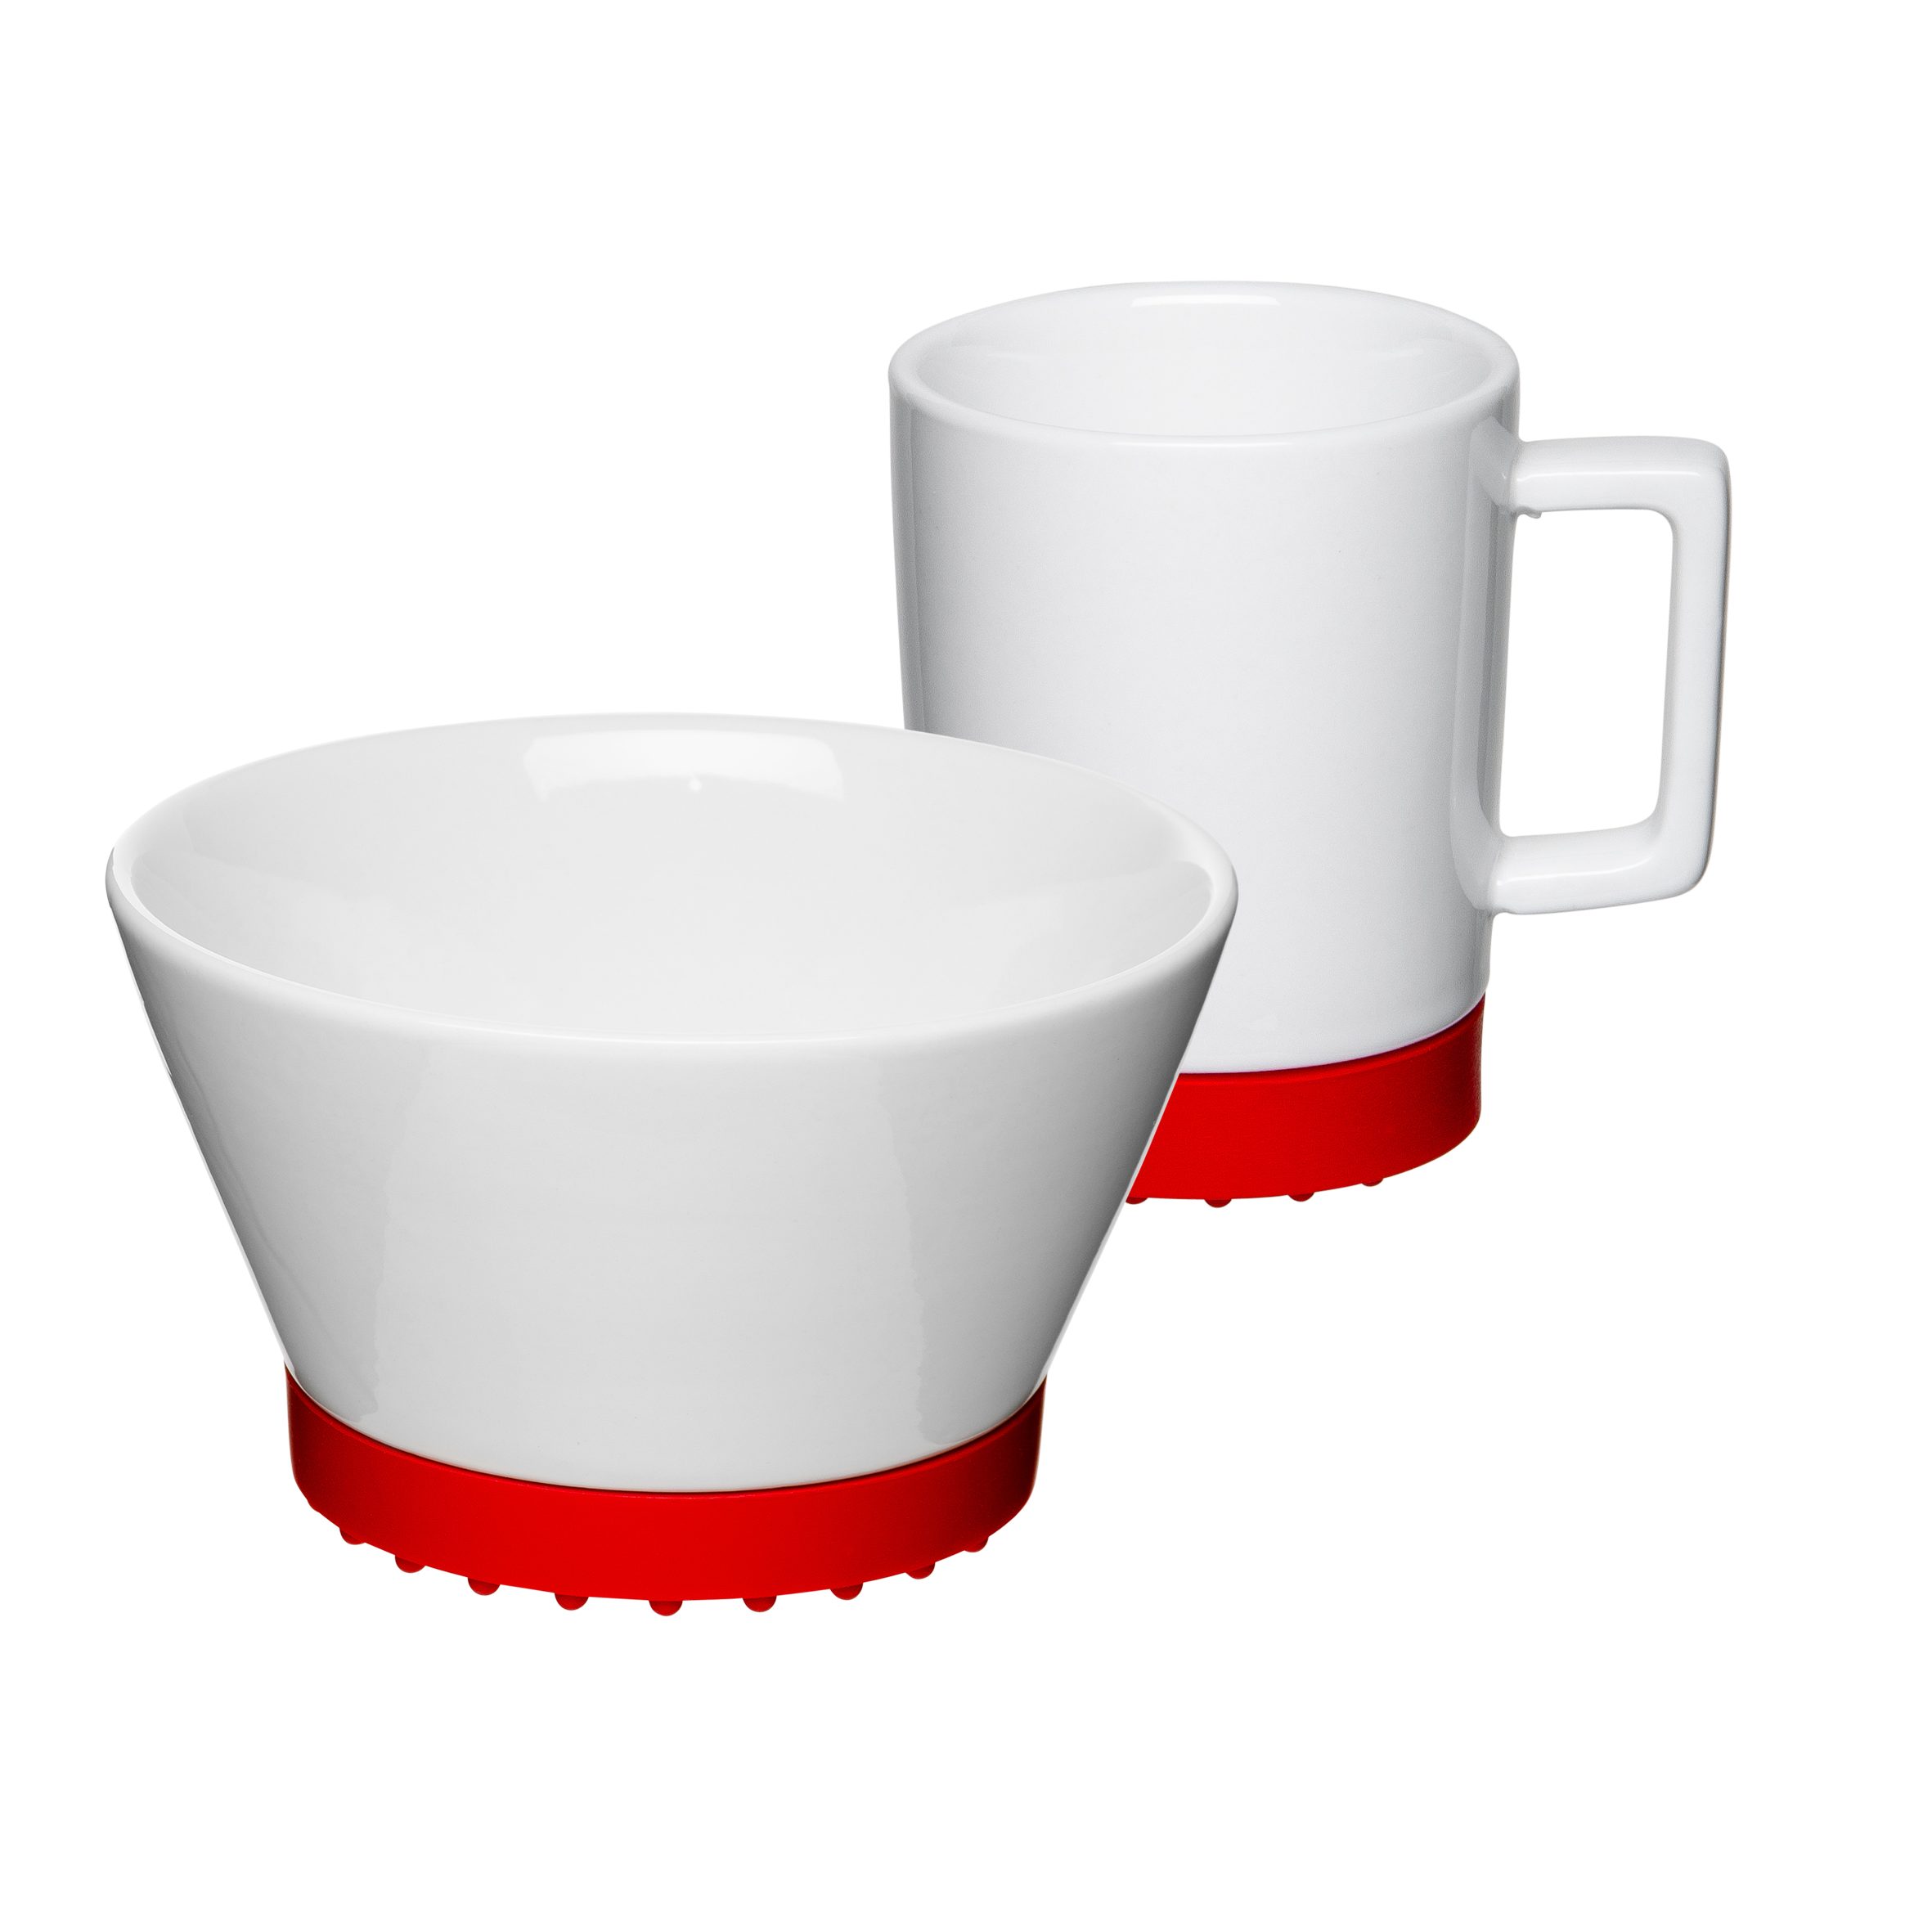 Mahlwerck Manufaktur Frühstücks-Geschirrset Red Personen, 1 2-teilig, spülmaschinengeeignet SoftPad mikrowellengeeignet, (2-tlg), Porzellan